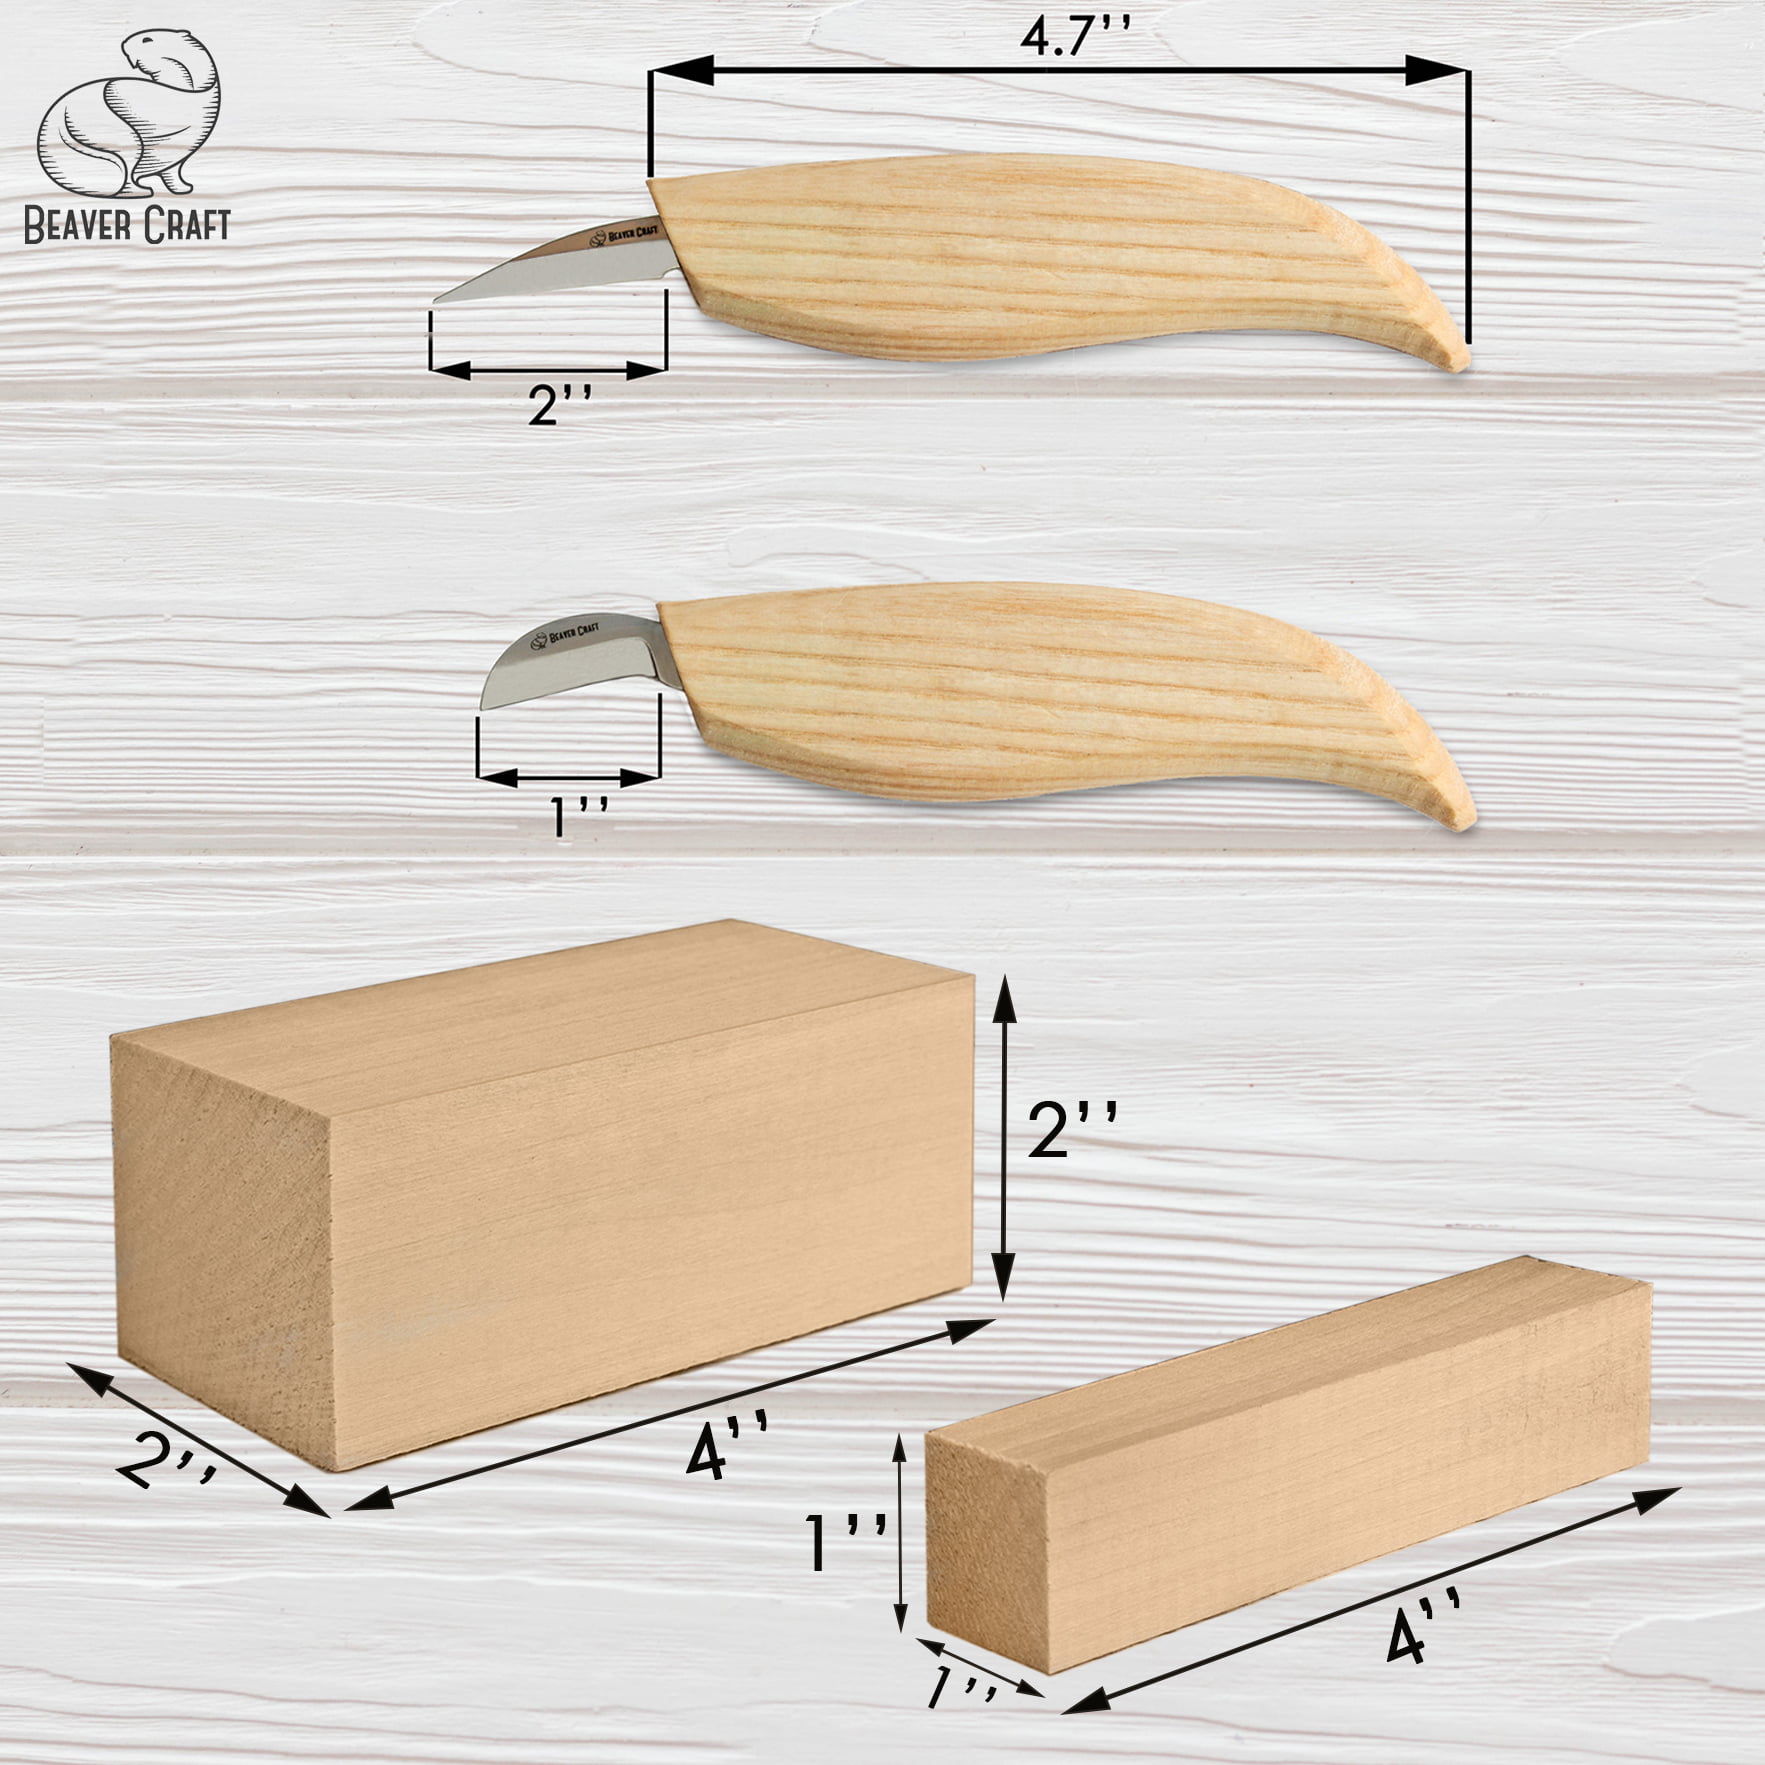 Beavercraft Wood Carving Kit S16, Whittling Wood Knives Kit